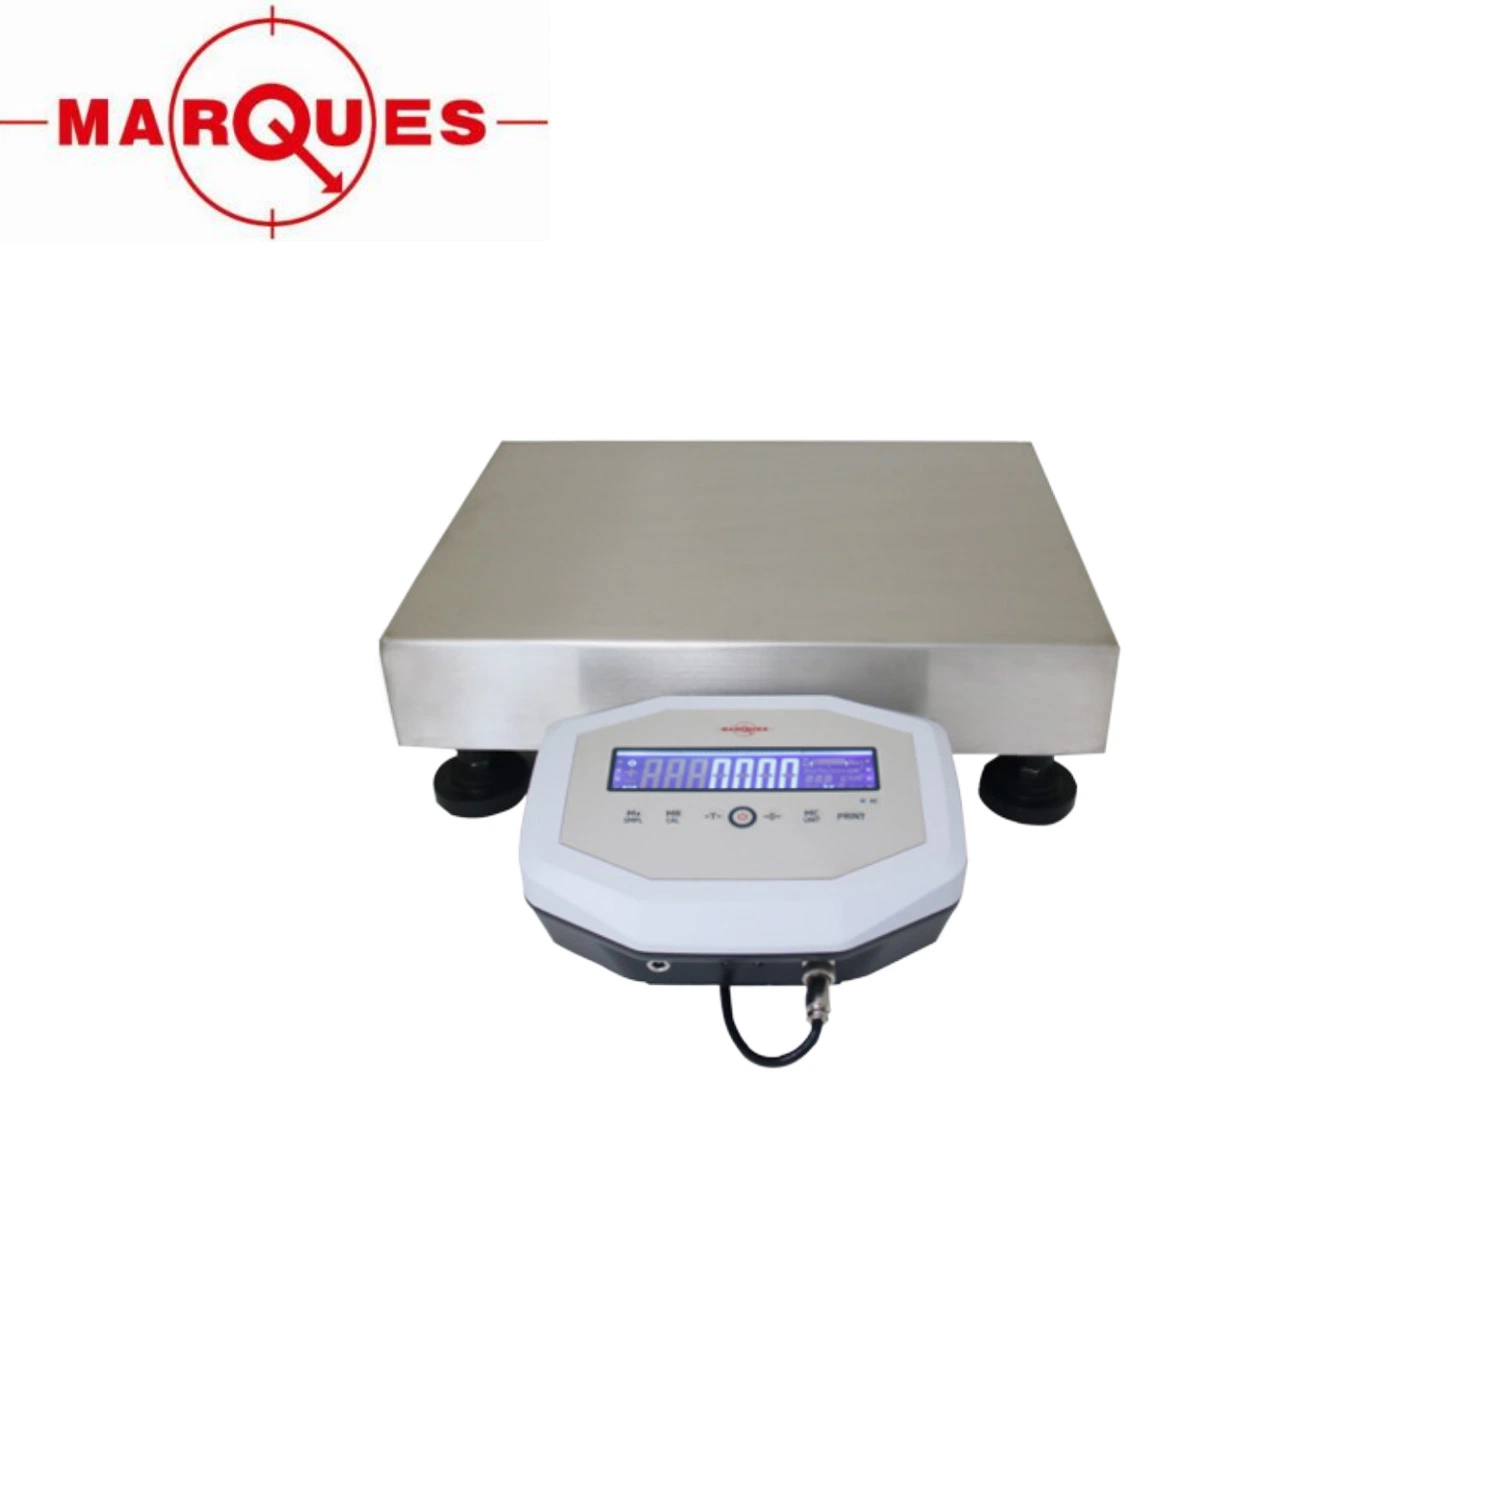 IP65 Stainless Steel Digital Weighing Waterproof Electronic Platform Scales 30kg